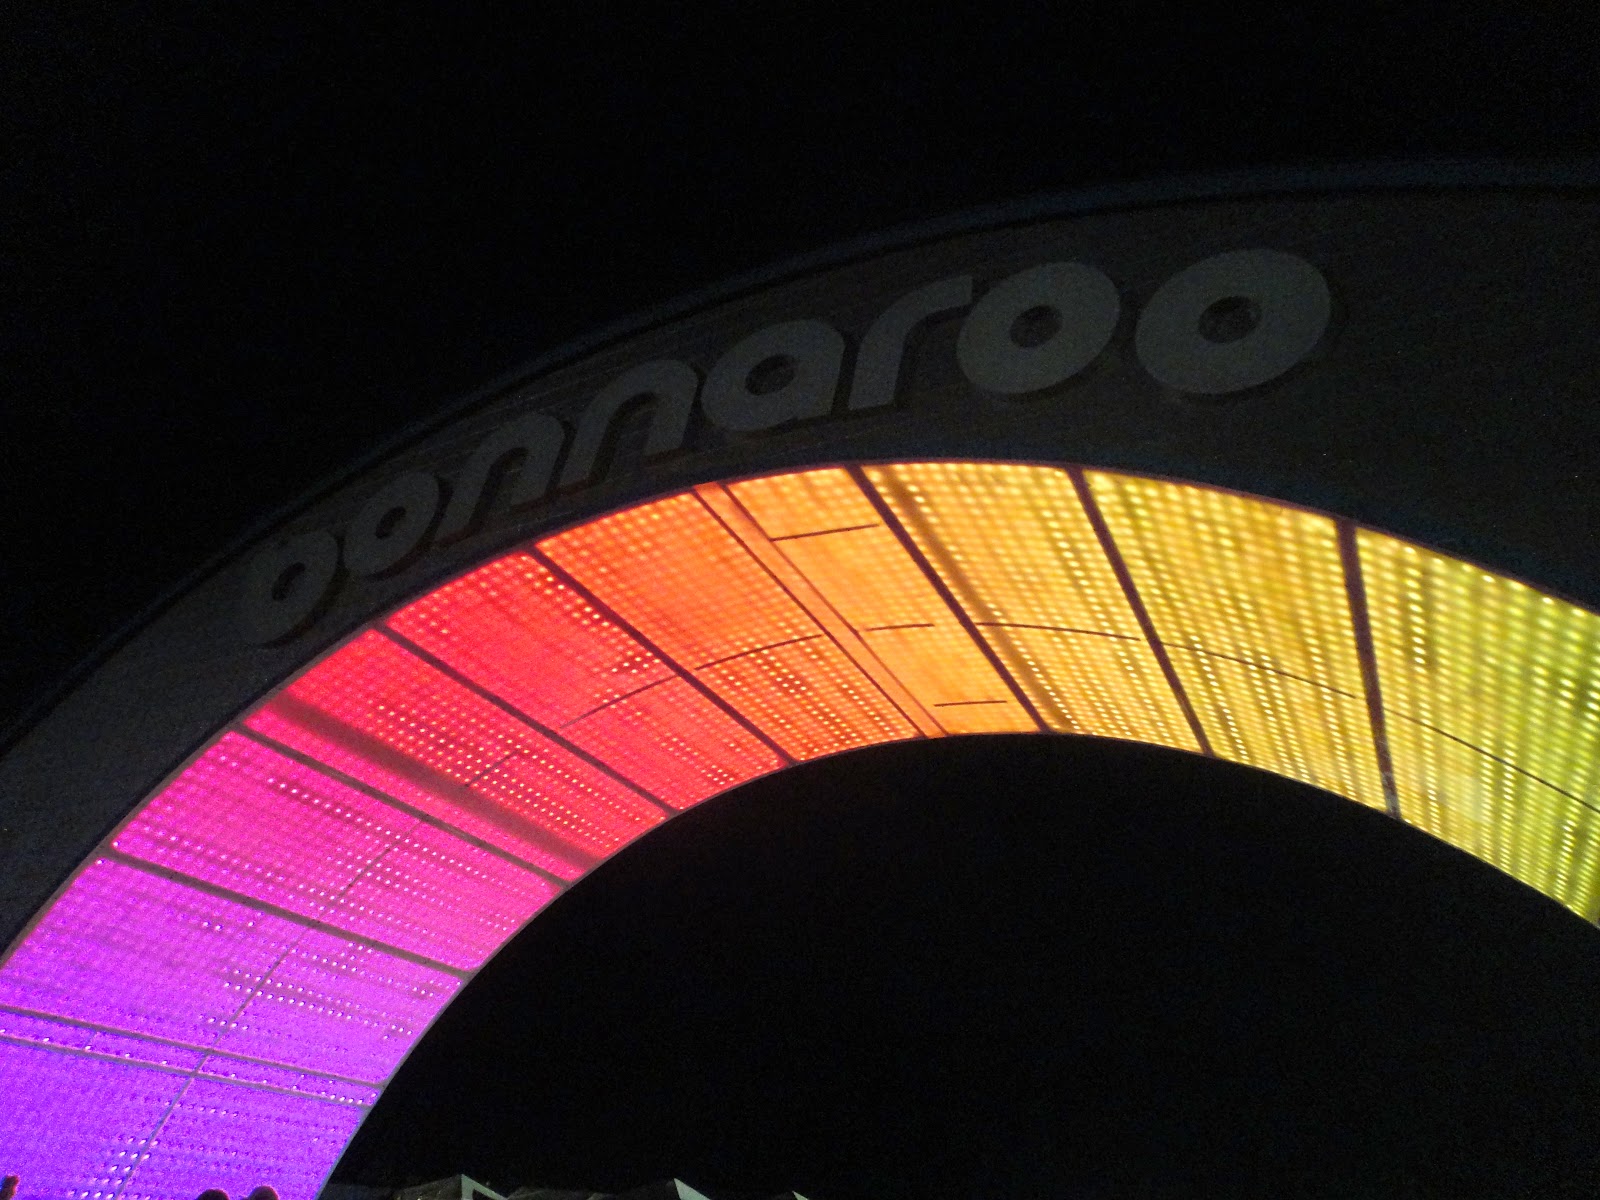 Bonnaroo Arch at Night, 2012